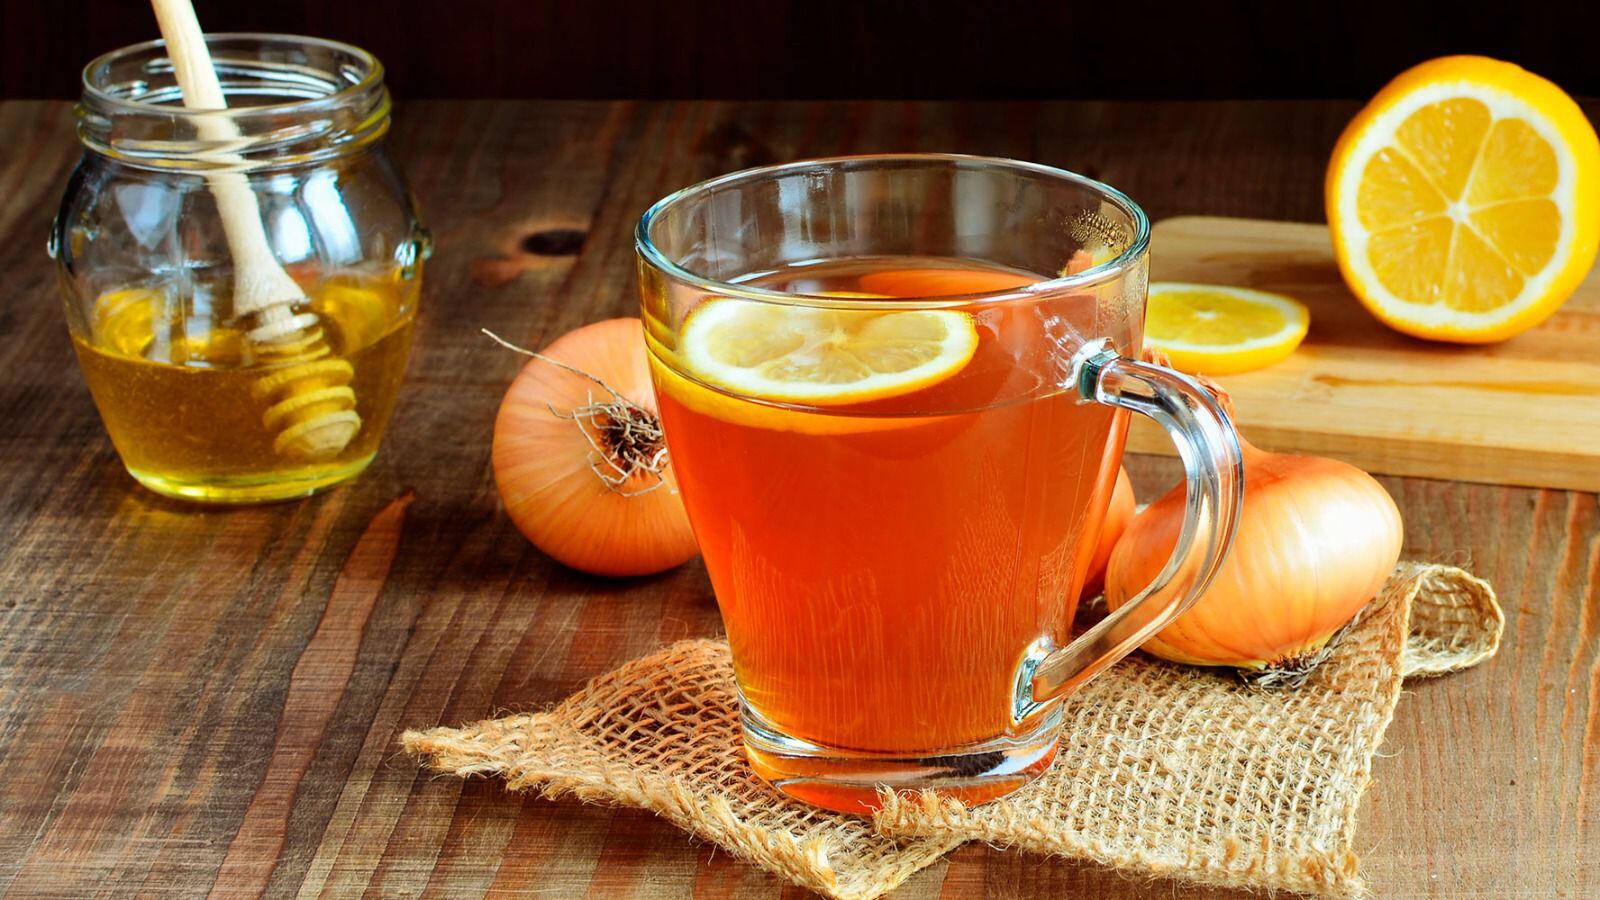 El té de cebolla se promueve por supuestos beneficios contra el resfriado y otras enfermedades respiratorias. (Foto: Shutterstock).